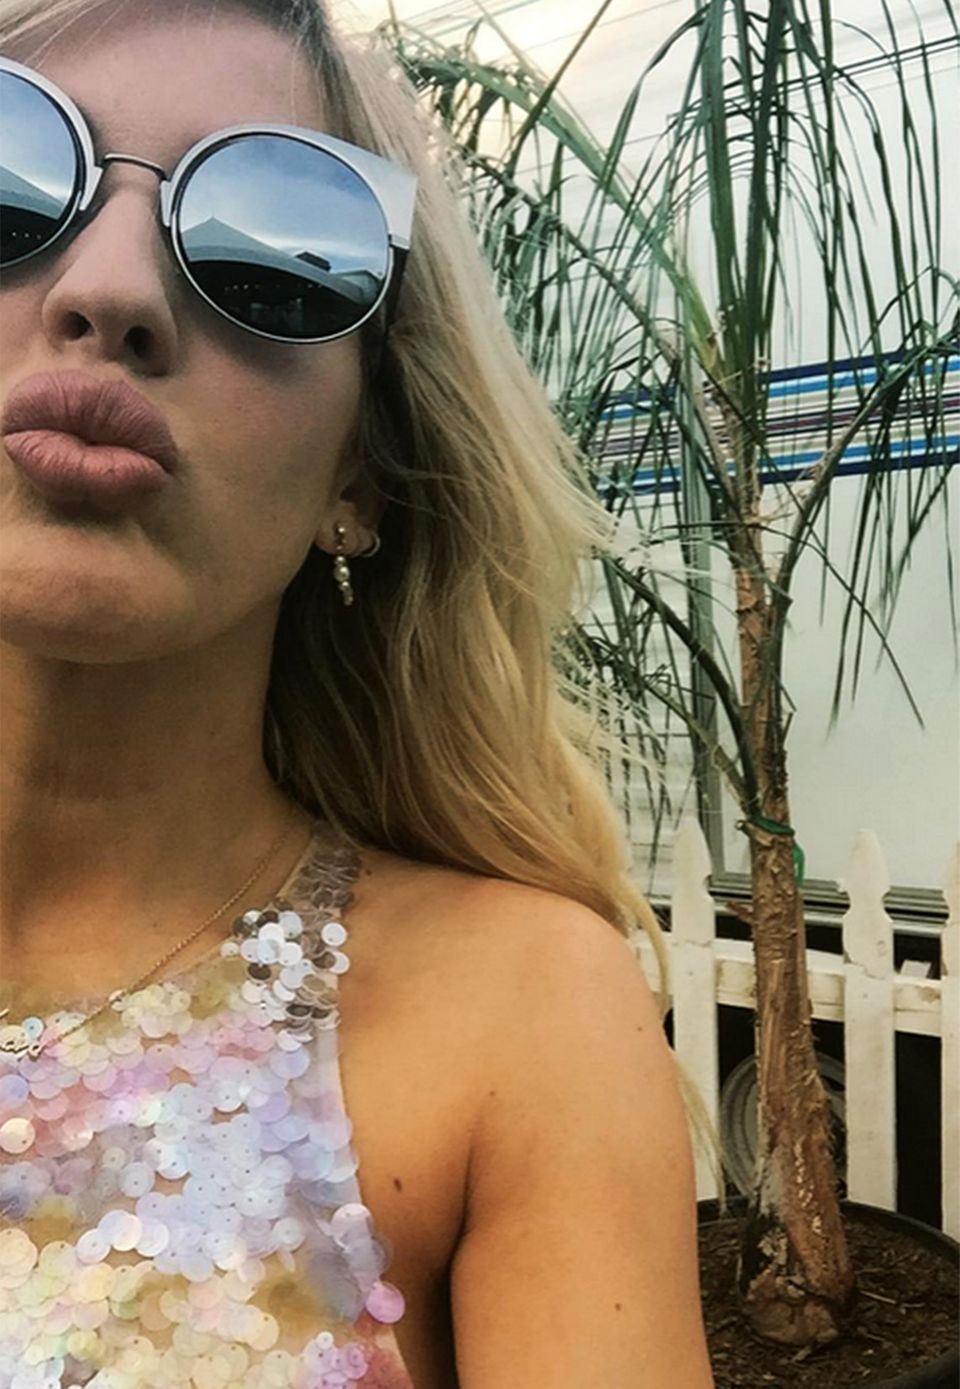 Ellie Goulding gewährt uns aus dem mit Wohnwagen ausgestatteten Künstler-Bereich eine Nahaufnahme auf ihr glamouröses Pailletten-Top und die schicke Fendi-Sonnenbrille.